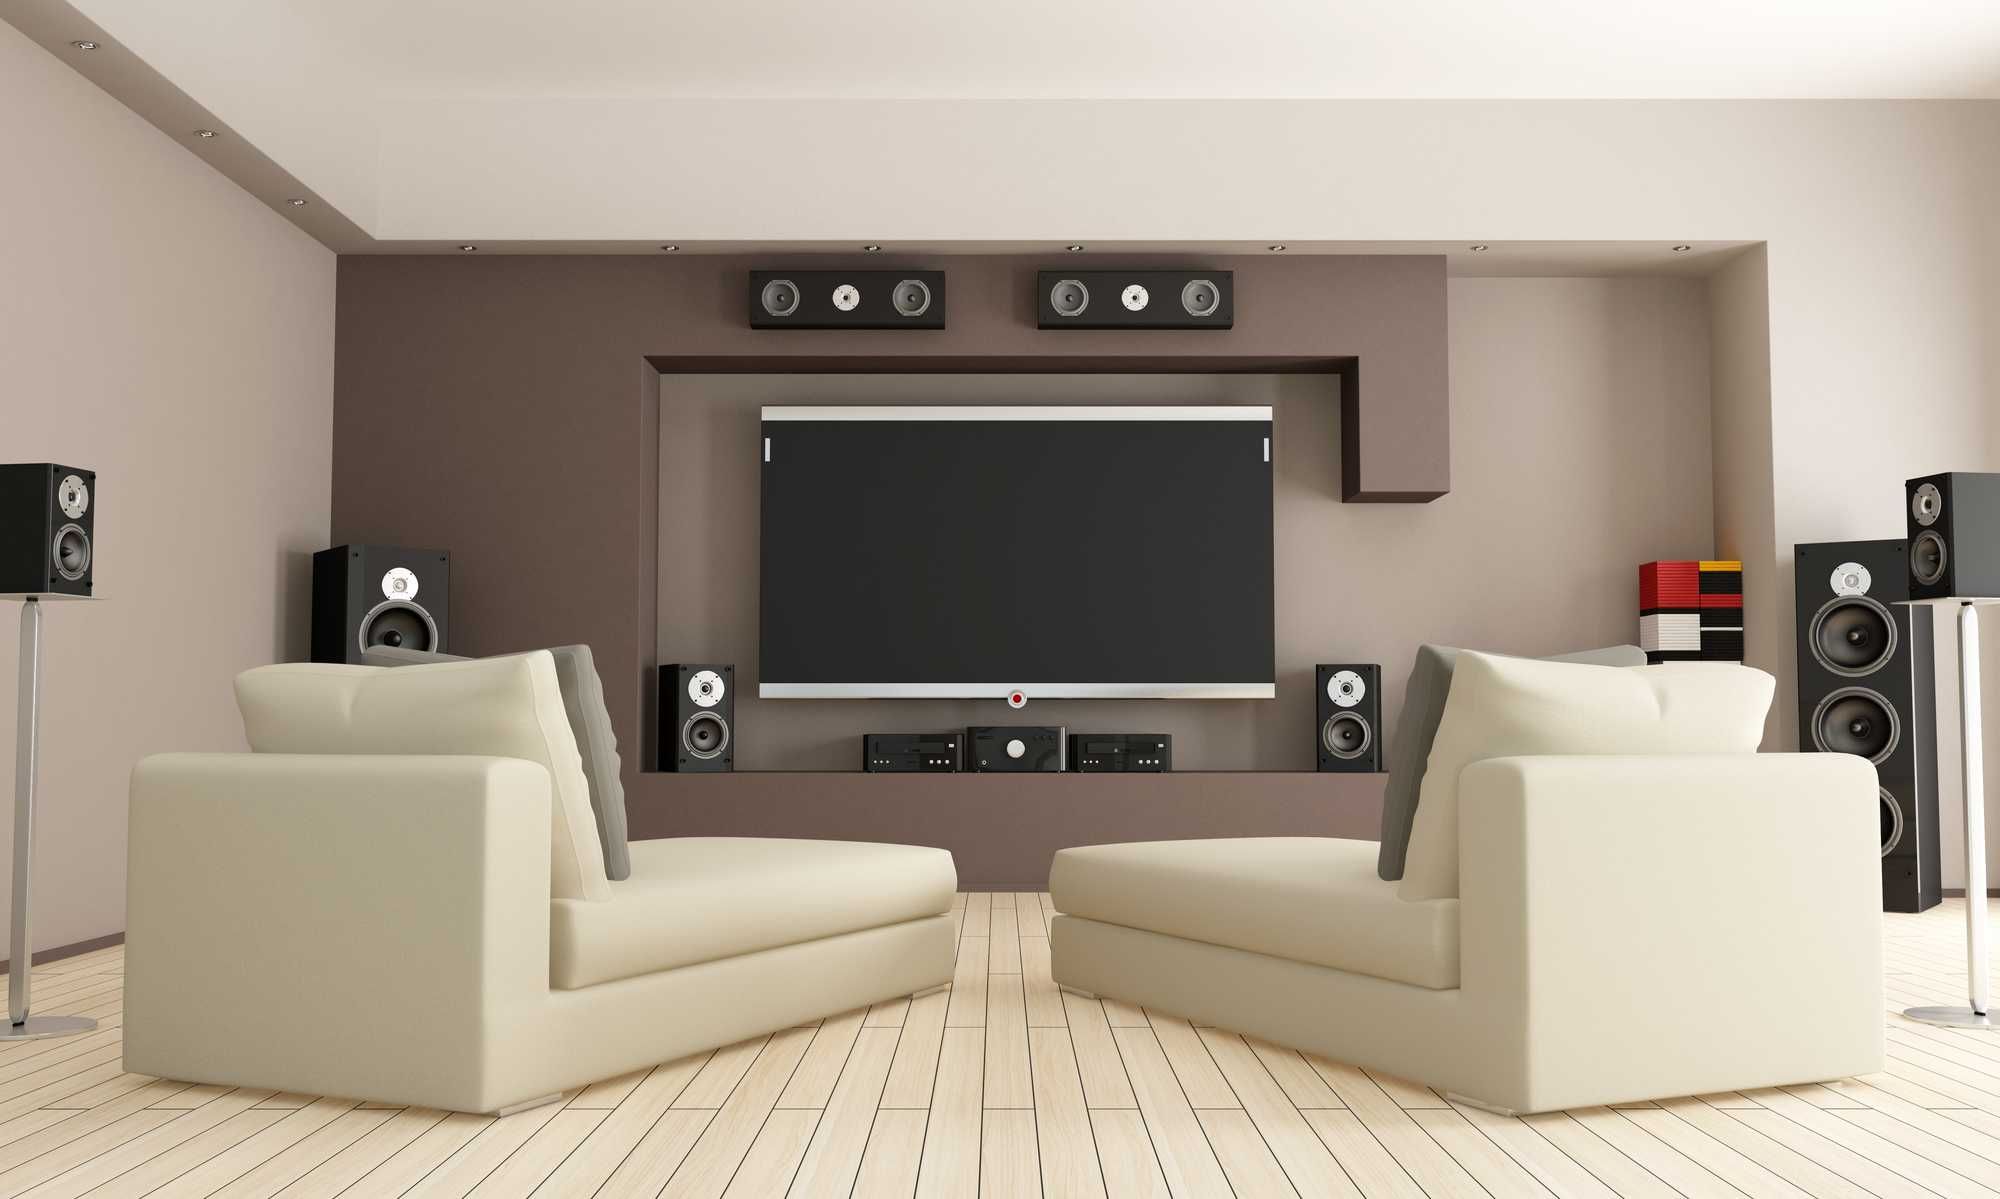 Instalacje audio - kino domowe TV - stereo - doradztwo i konfiguracja